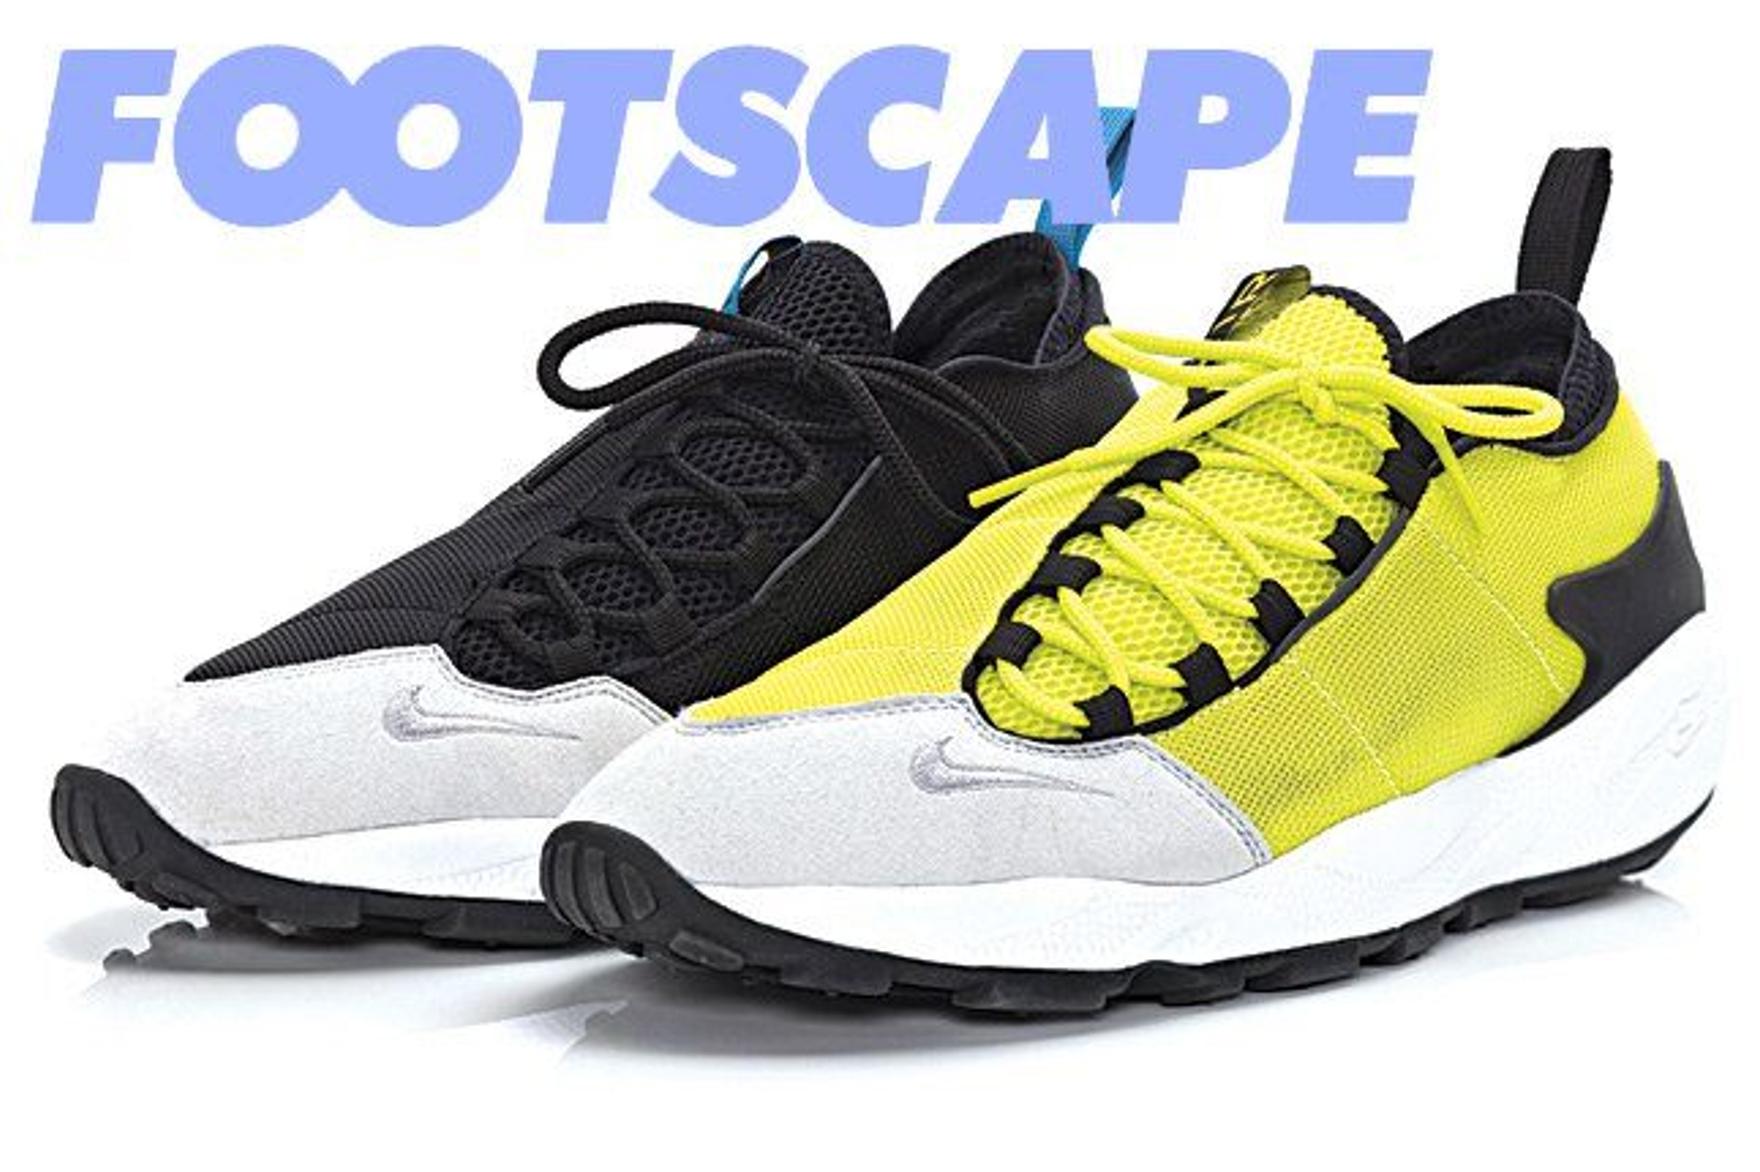 The Nike av9371 Footscape 3